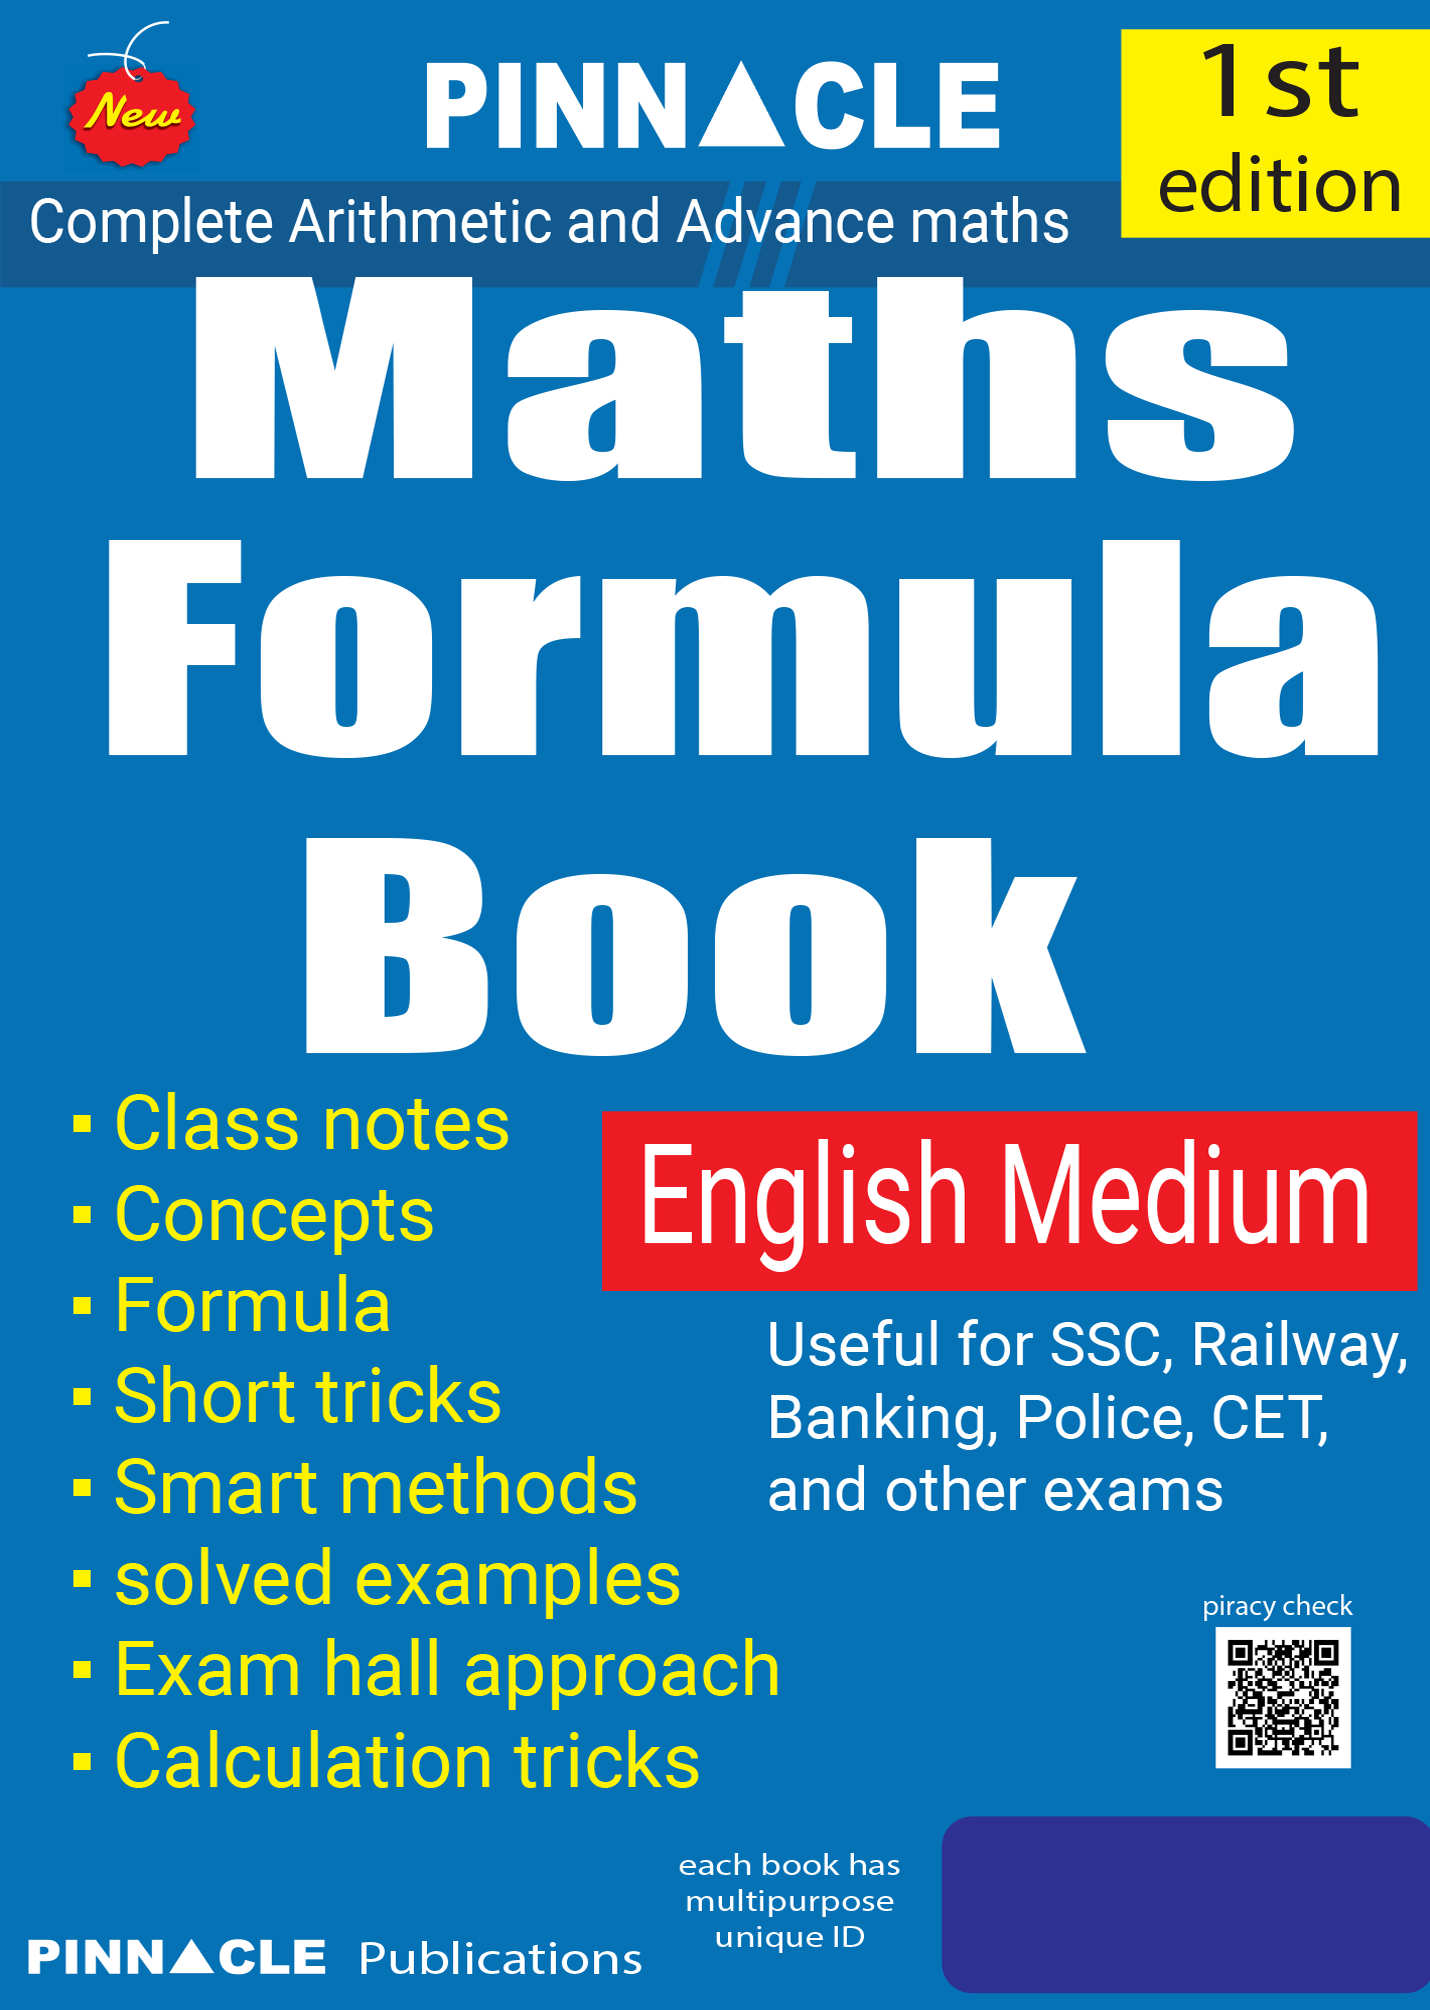 Pinnacle Maths Formula book